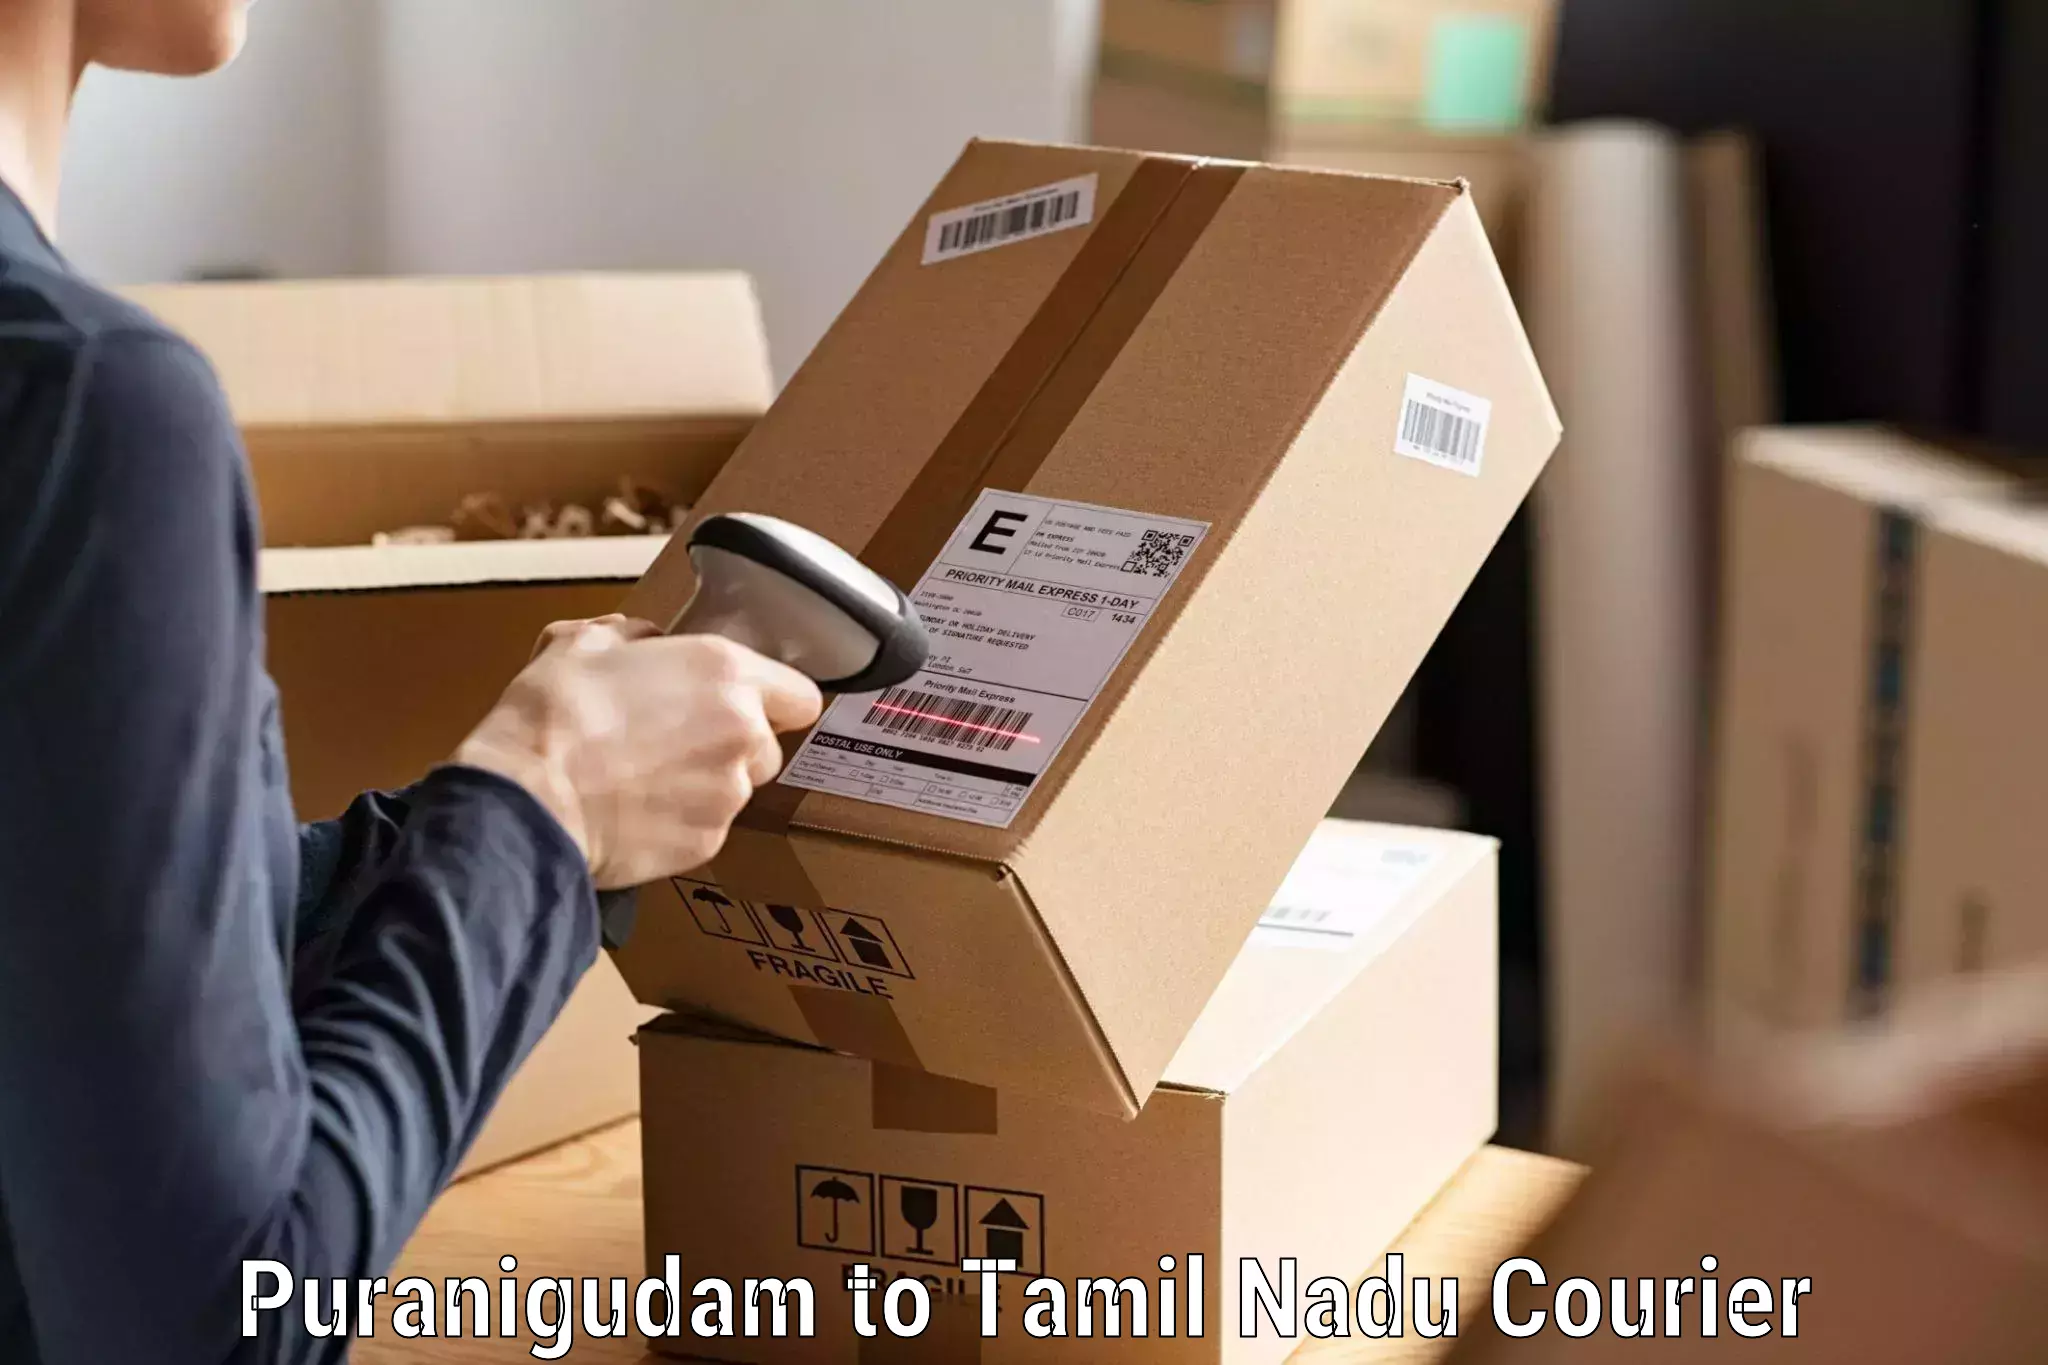 Express delivery solutions Puranigudam to Ambattur